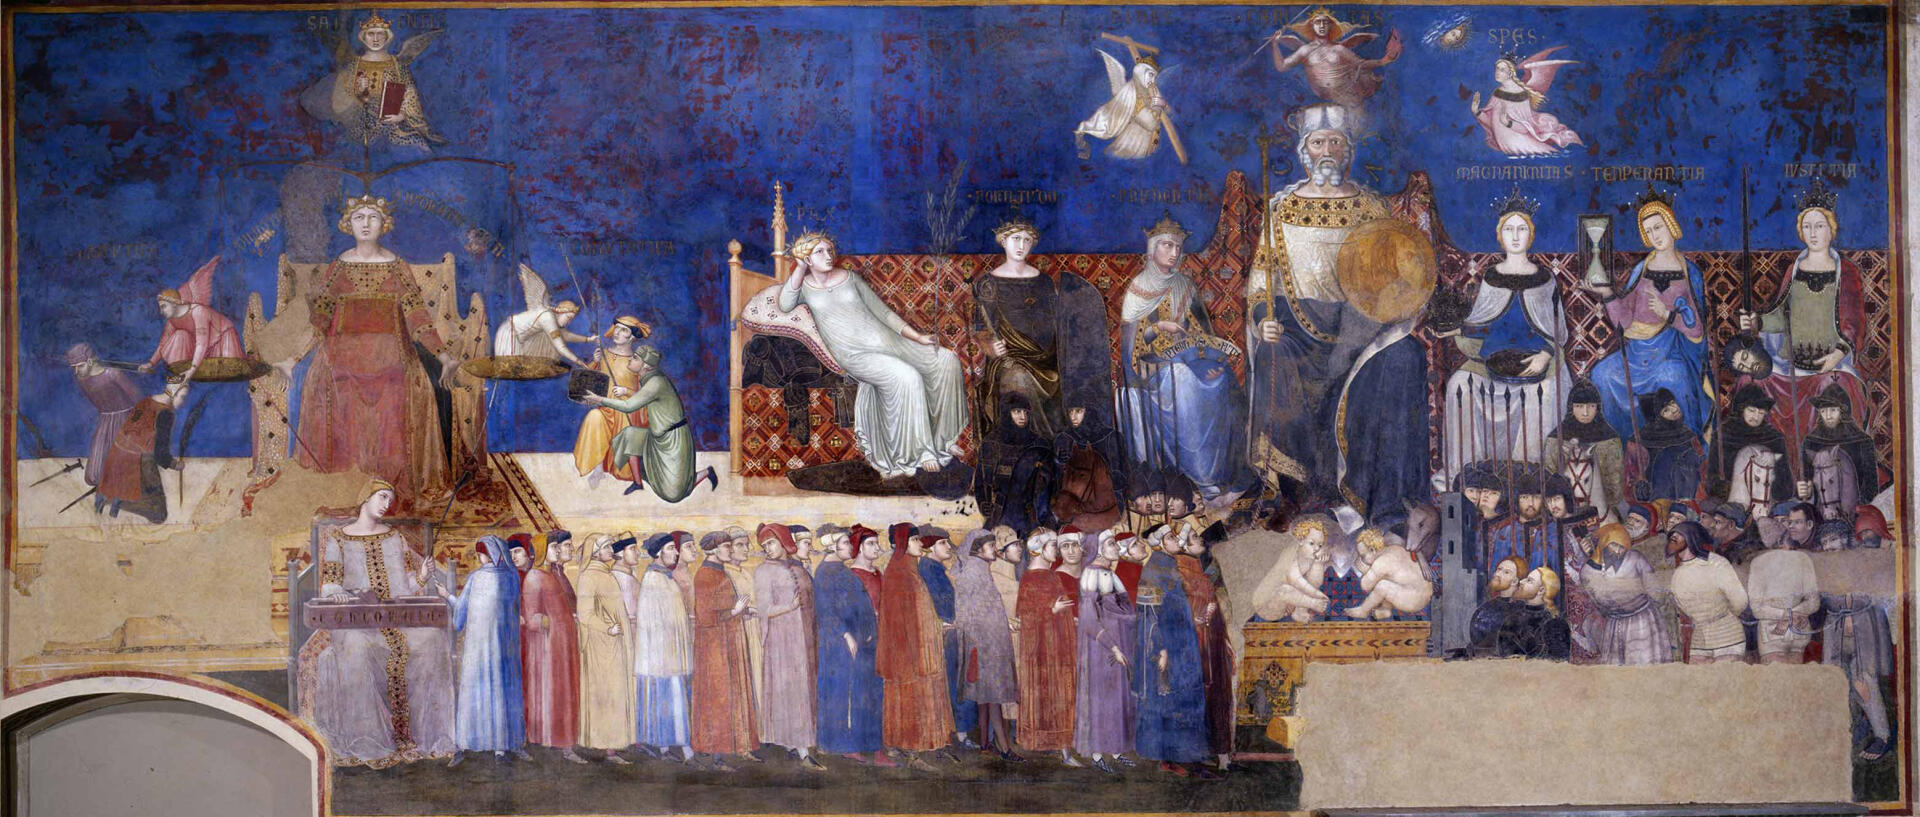 La paroi nord de la fresque d’Ambrogio Lorenzetti représente l’allégorie du bon gouvernement.